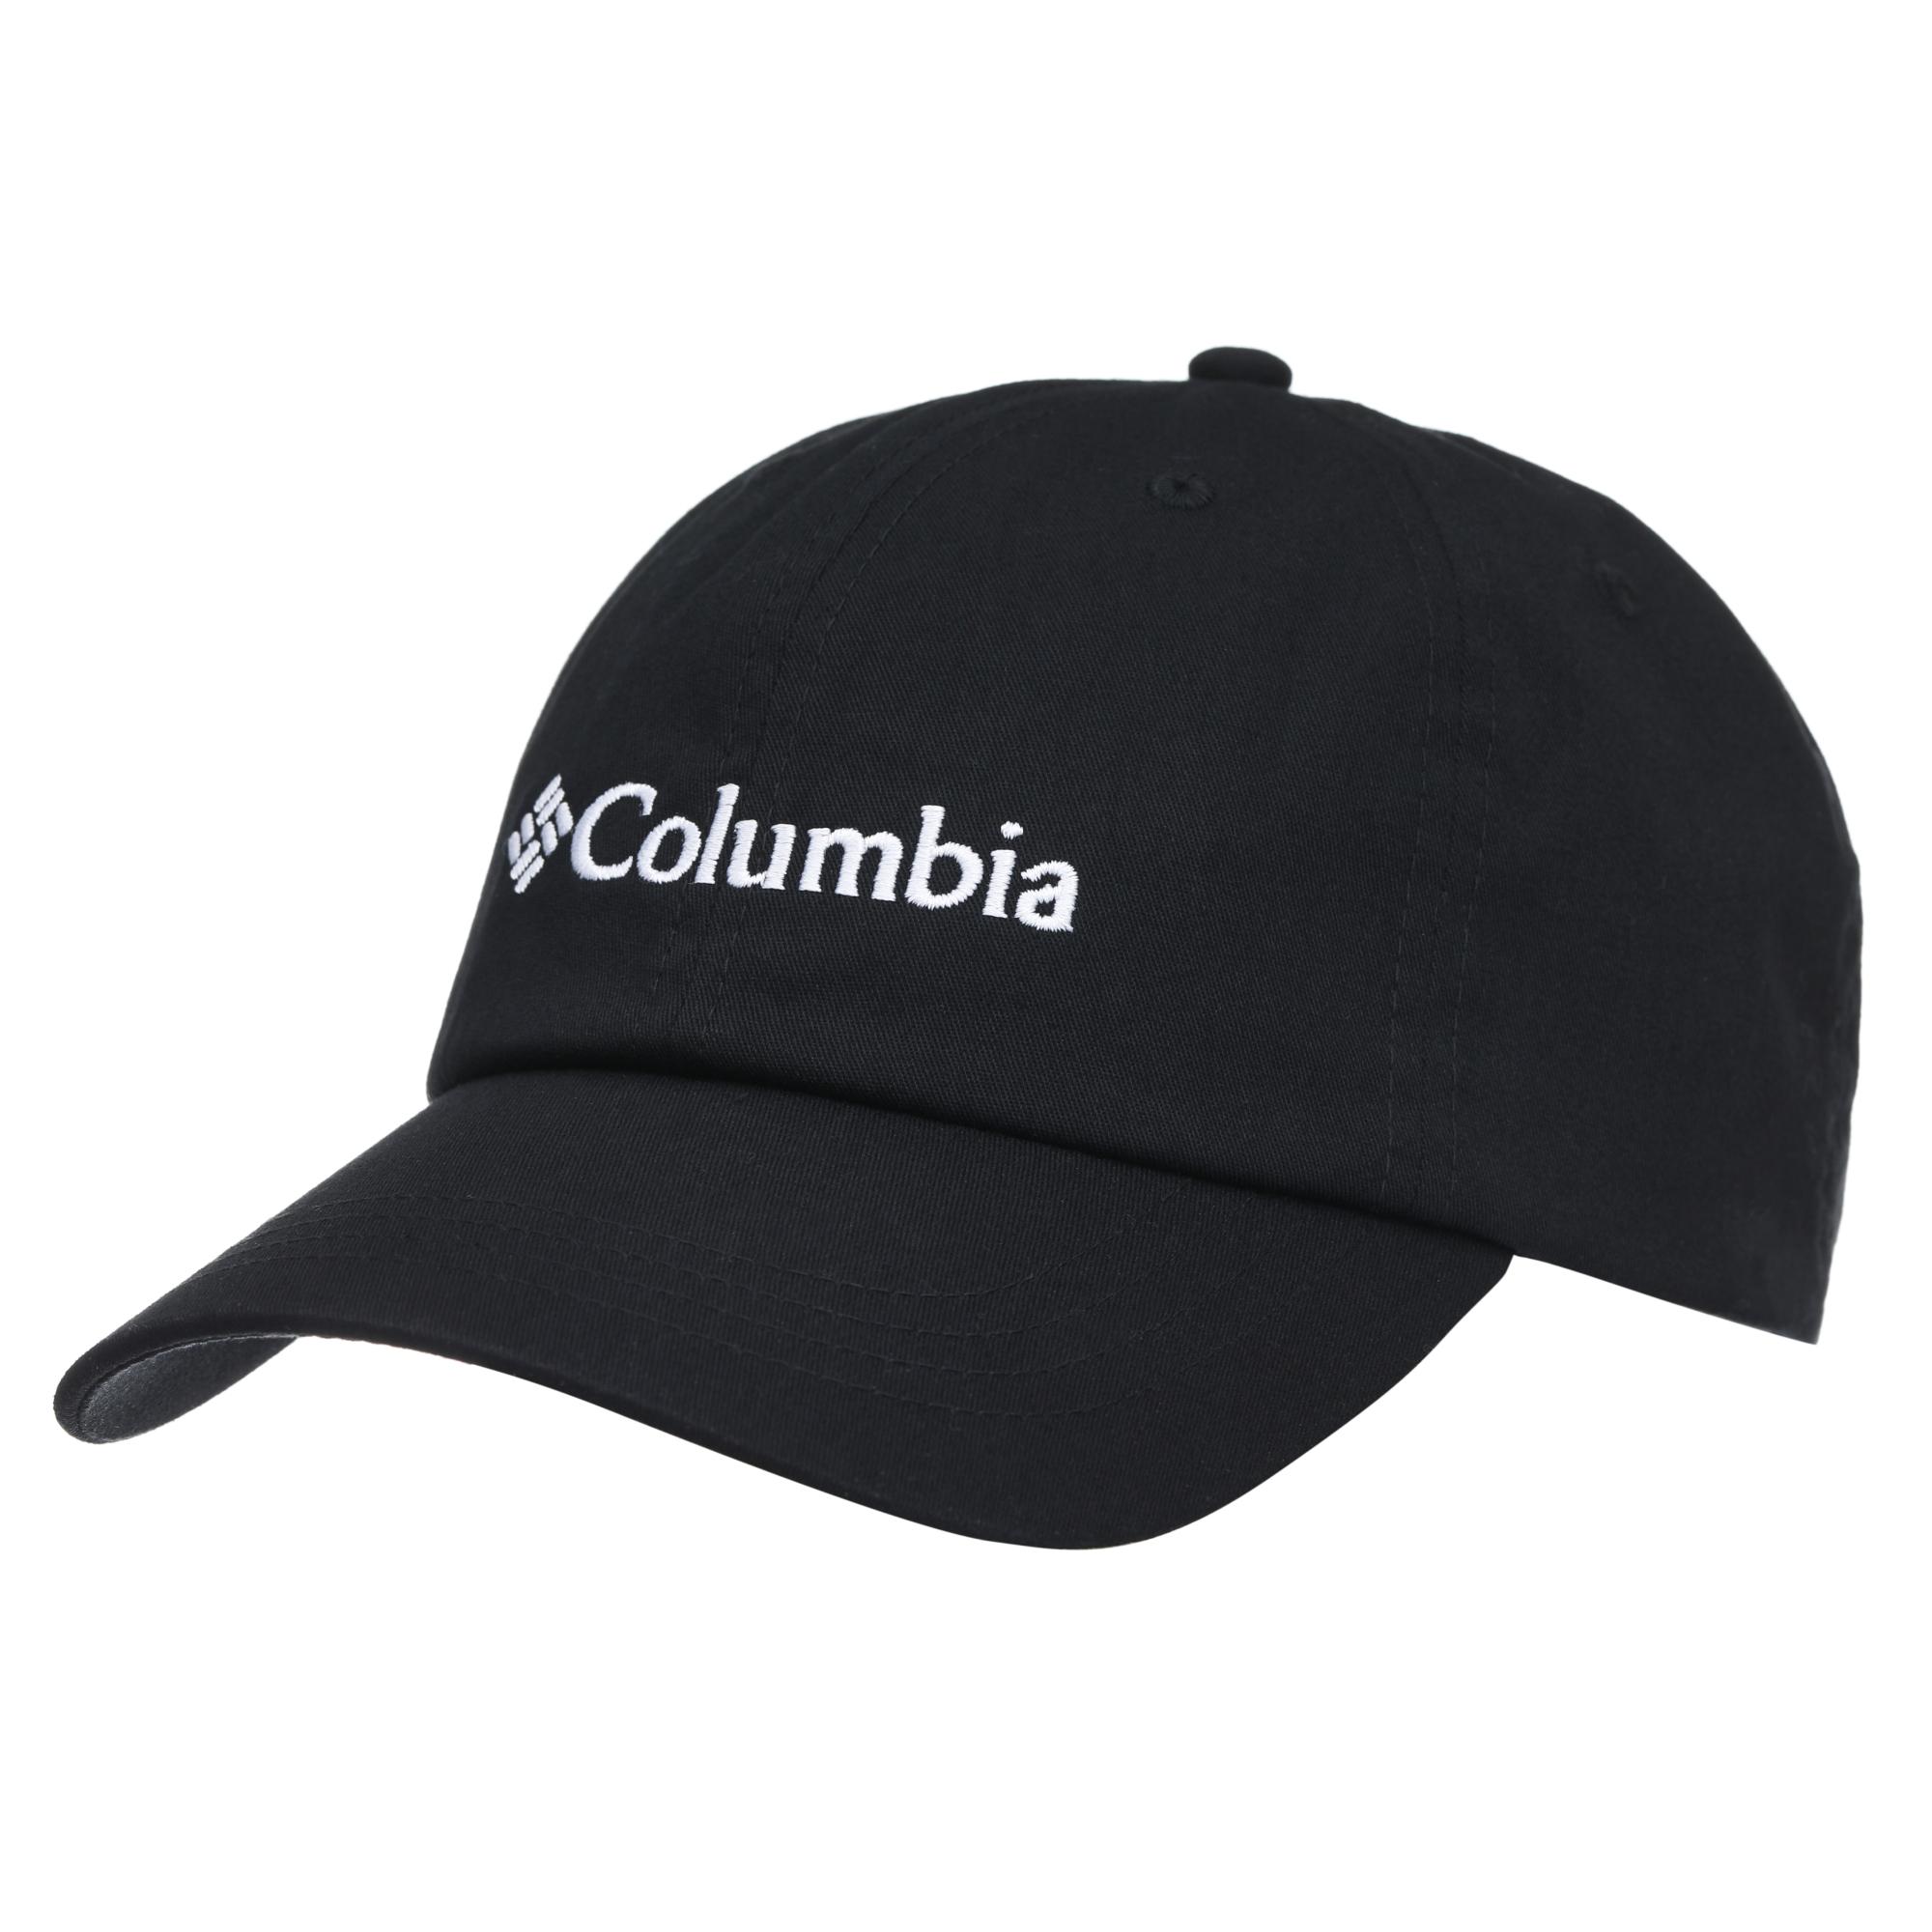 Columbia Roc Ii Cap - Shark/grey Steel